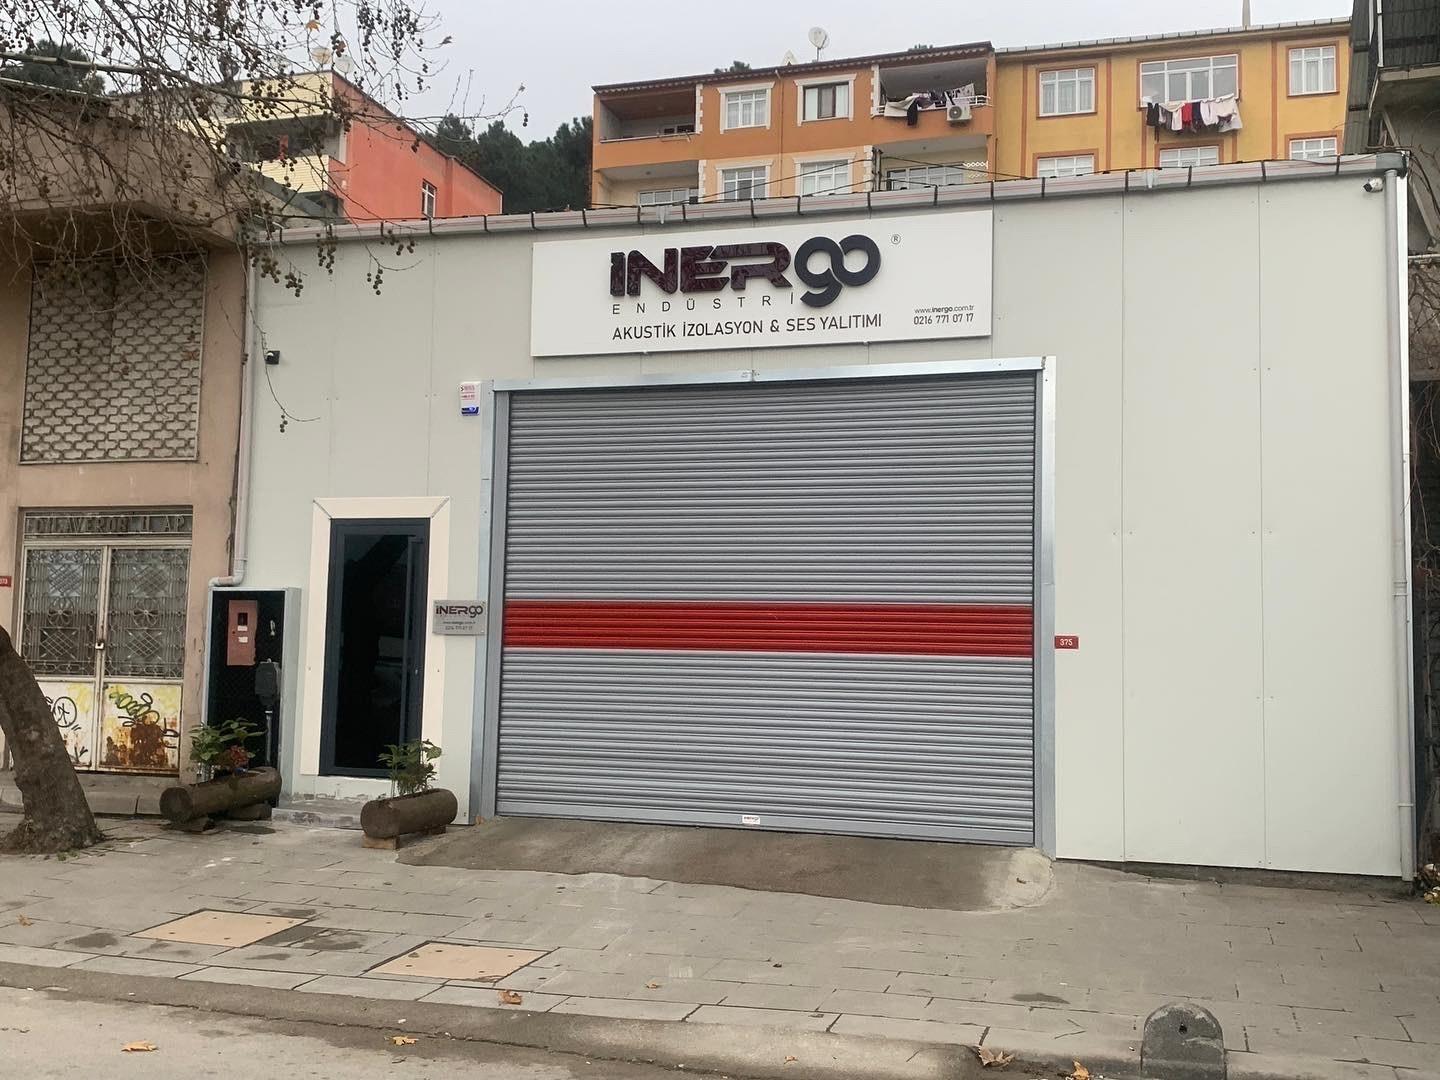 İnergo Endüstri ist jetzt in seiner neuen Produktionsstätte und neuen Website!